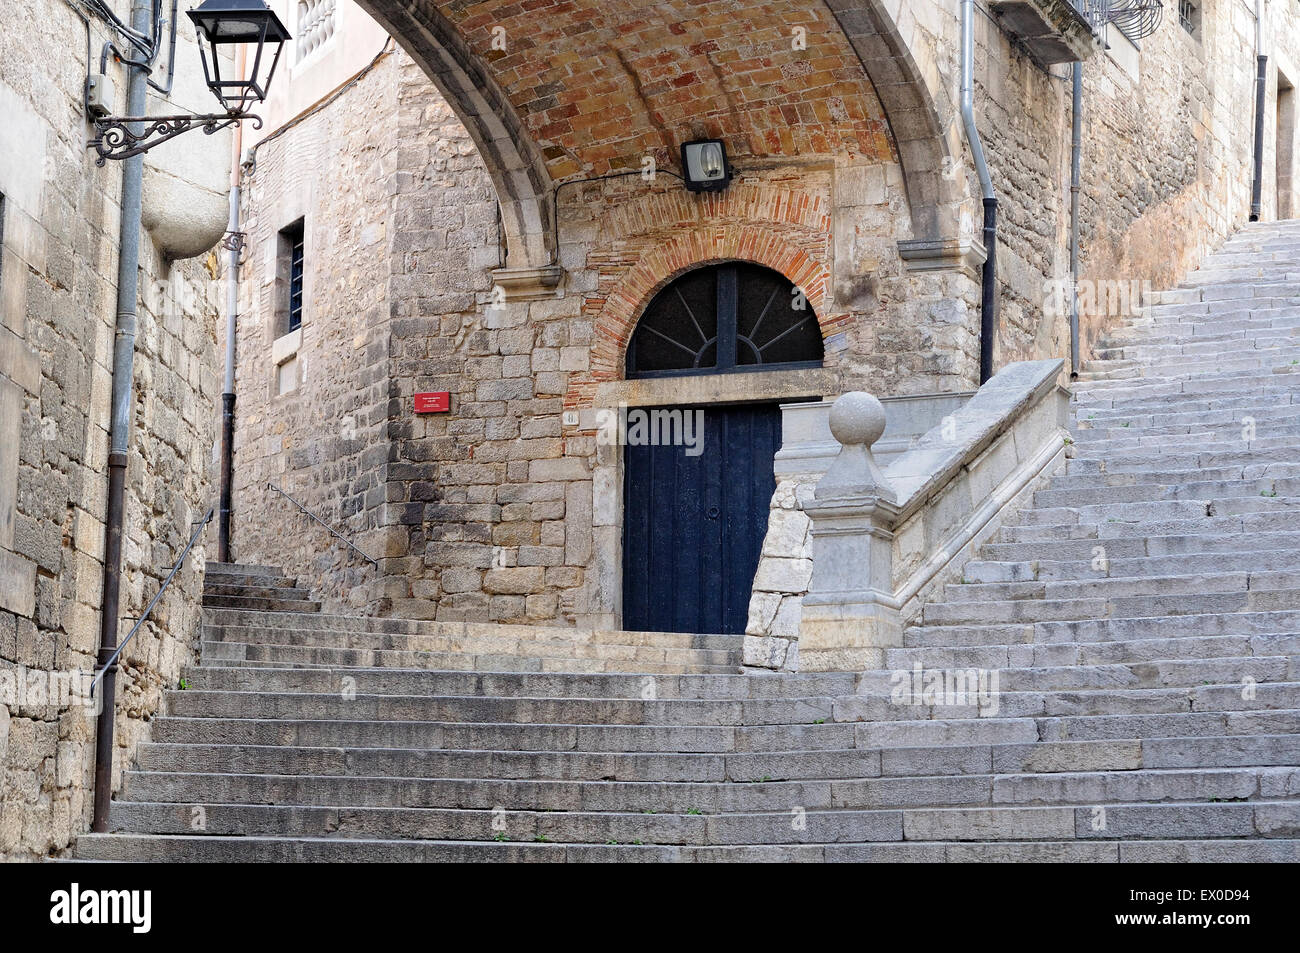 Escaliers de rues étroites dans le quartier juif de Gérone, Catalogne, Espagne Banque D'Images